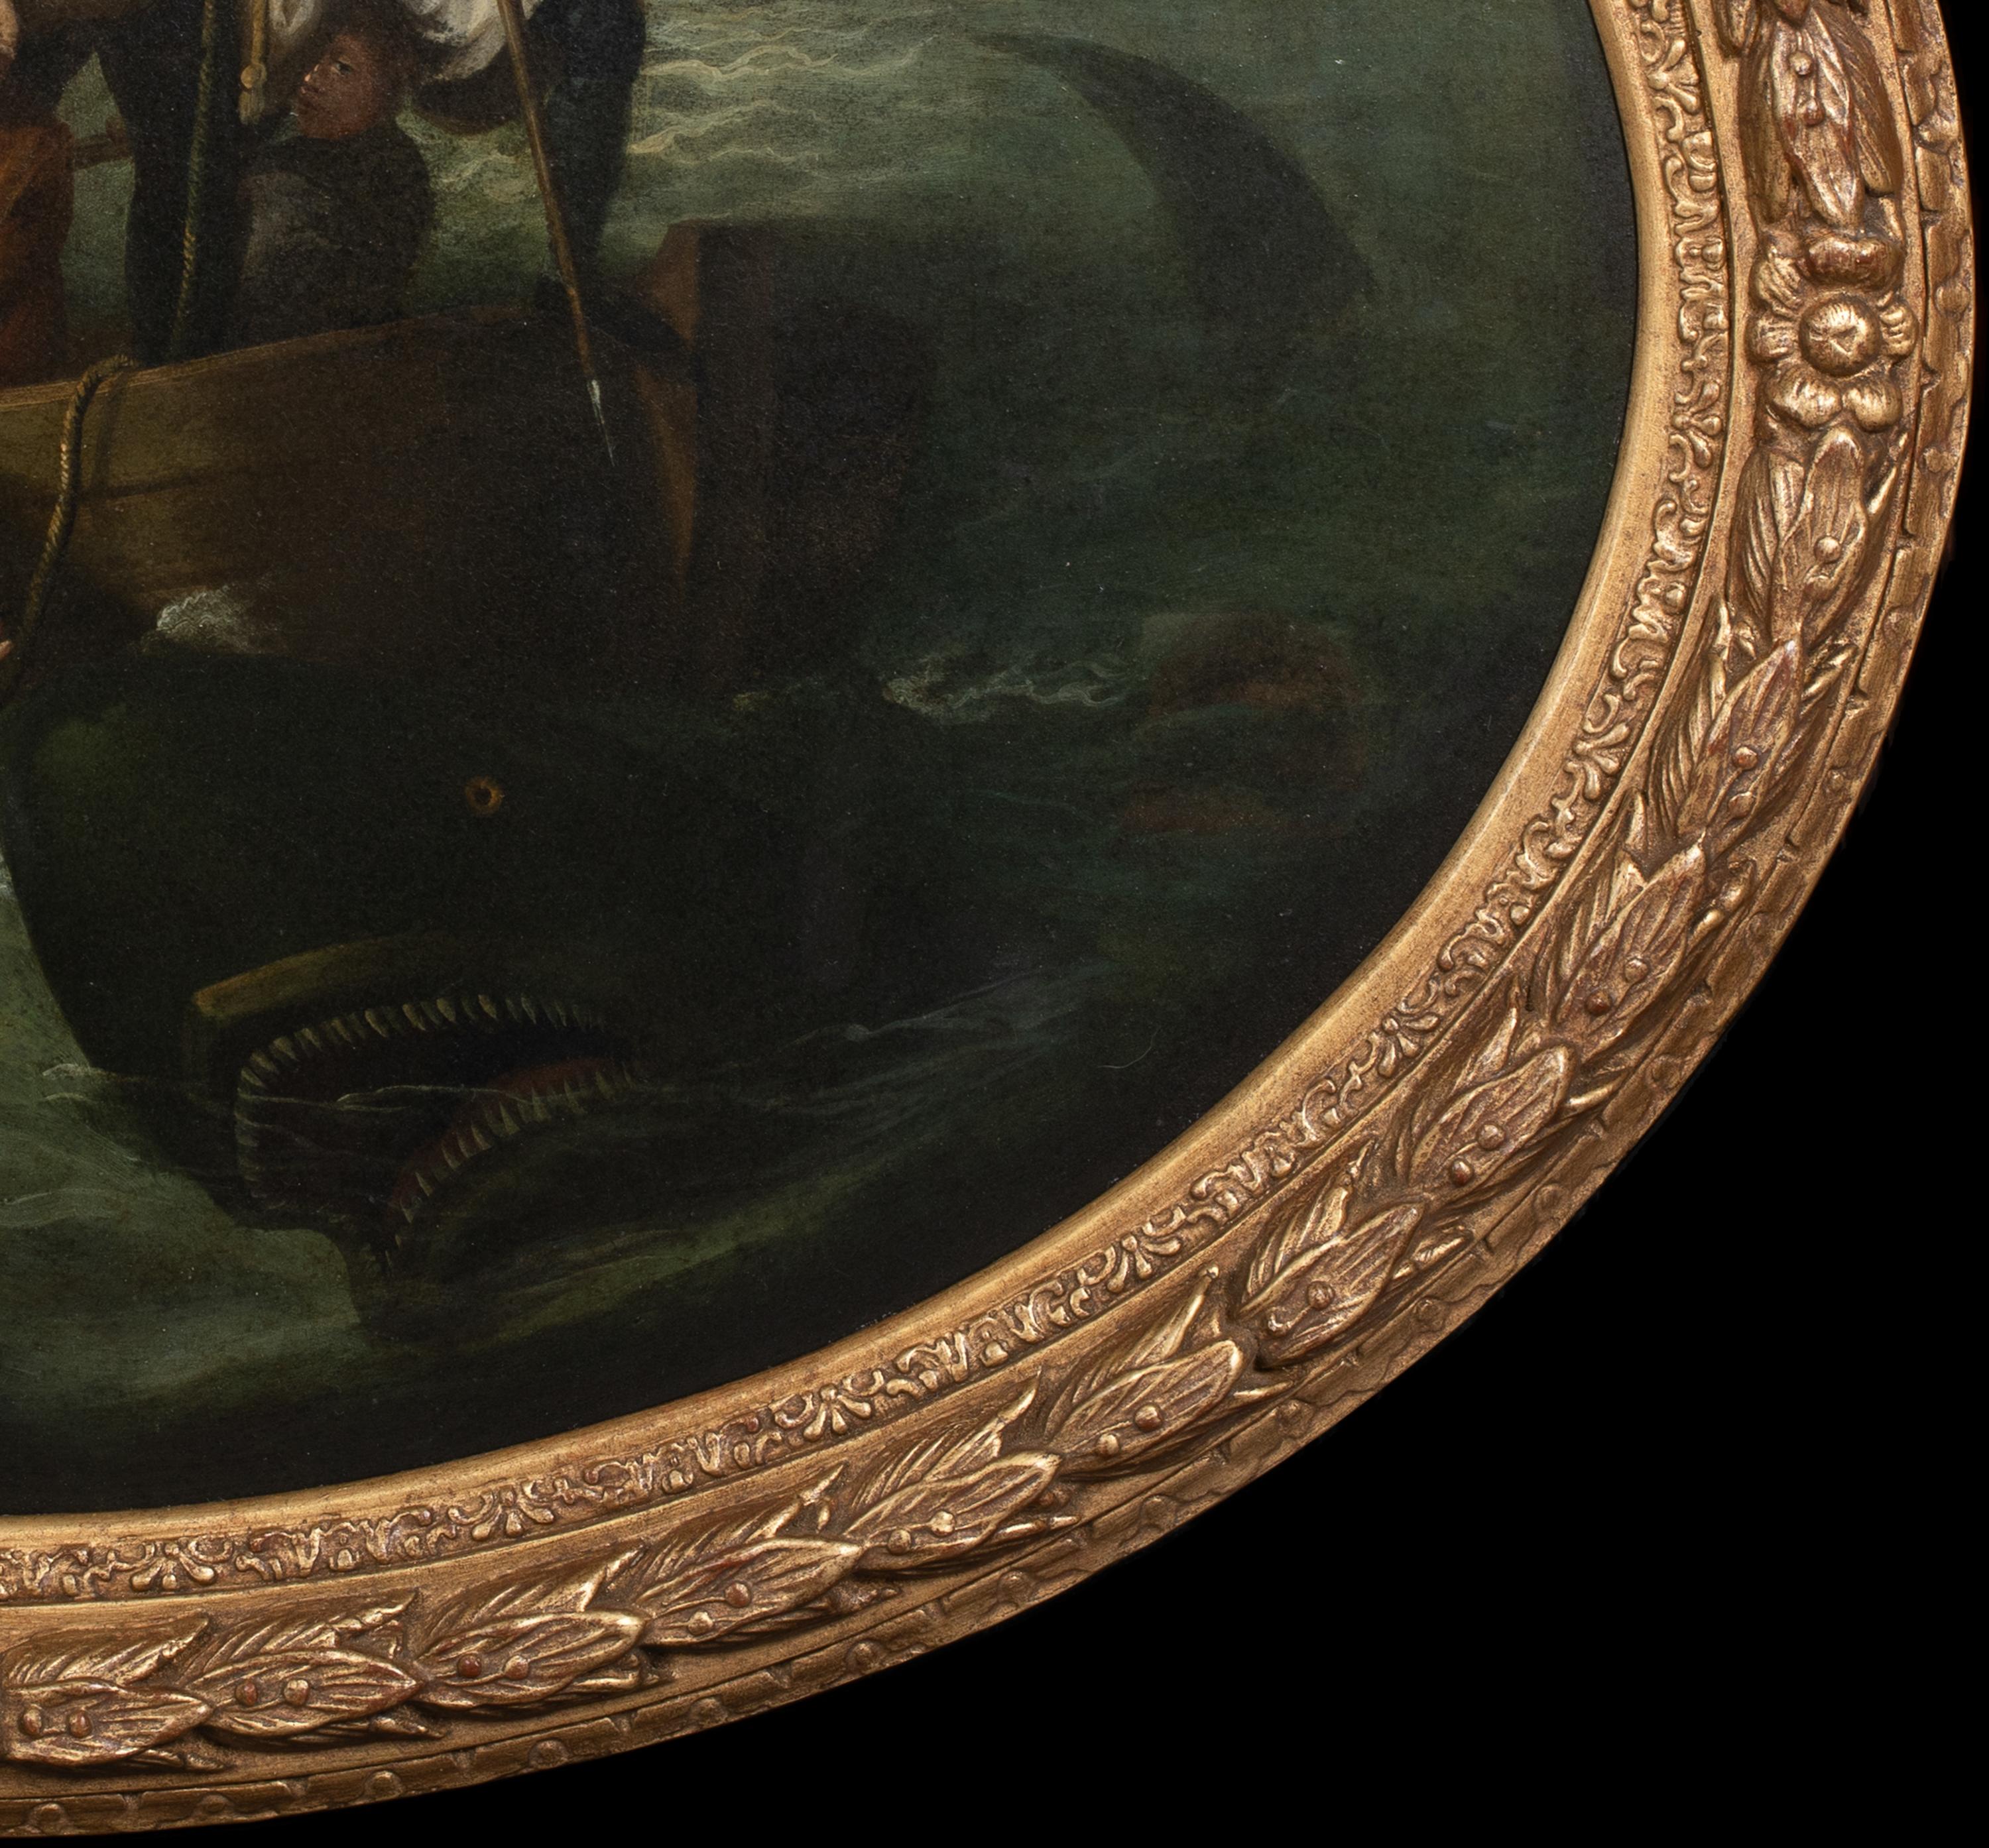 Watson und die Hai, 18. Jahrhundert

JOHN SINGLETON COPLEY (1738-1815)

Große Szene aus dem 18. Jahrhundert: Watson und der Hai, Öl auf Metall, John Singleton Copley. Ausgezeichnete Qualität und Zustand des späten 18. Jahrhunderts Szene des